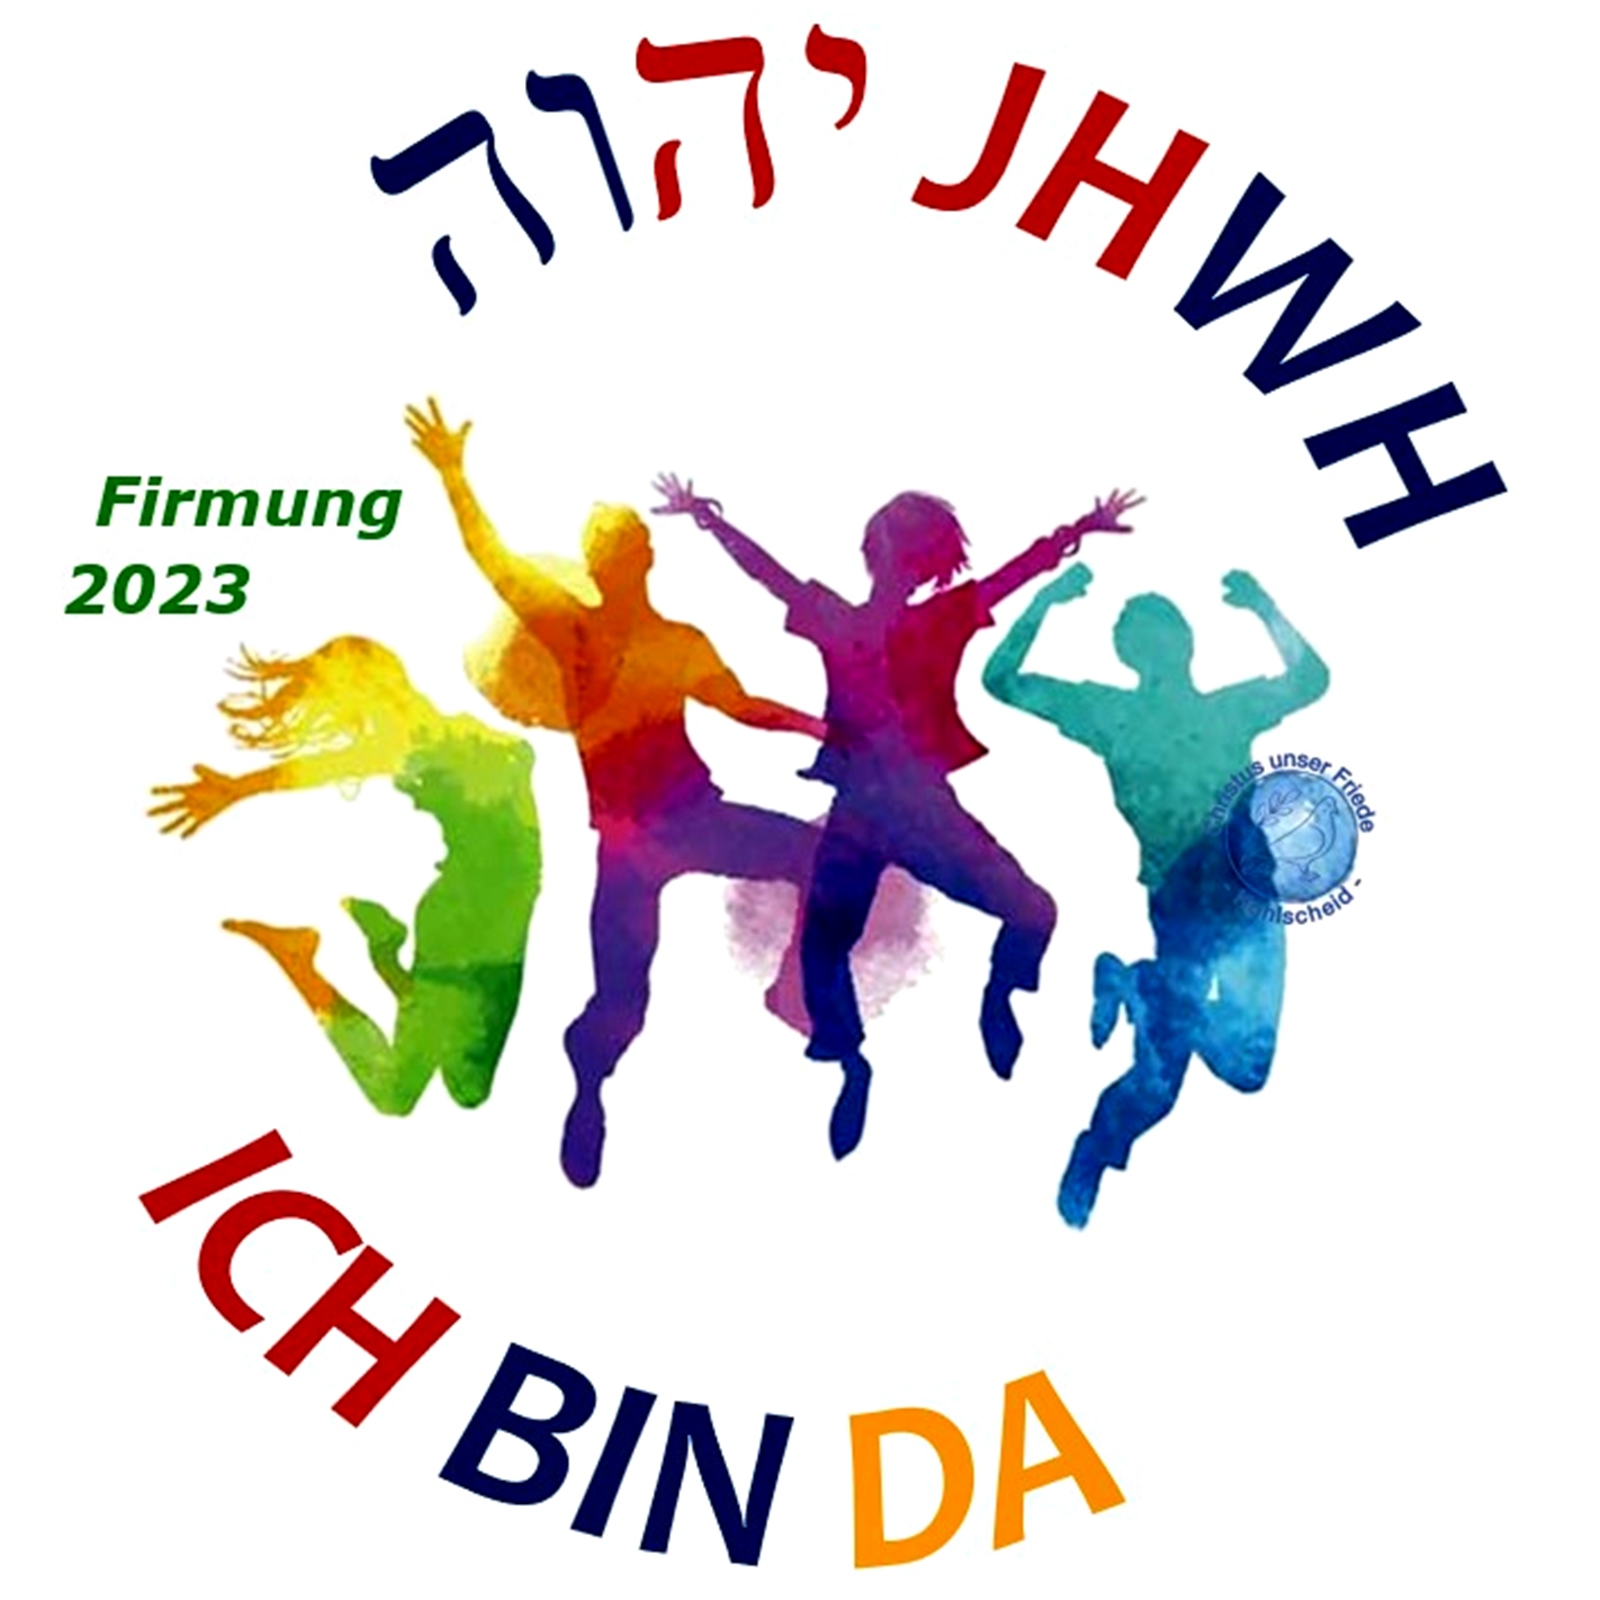 Firmung 2023 - JHWH ICH BIN DA (LOGO - FJW)